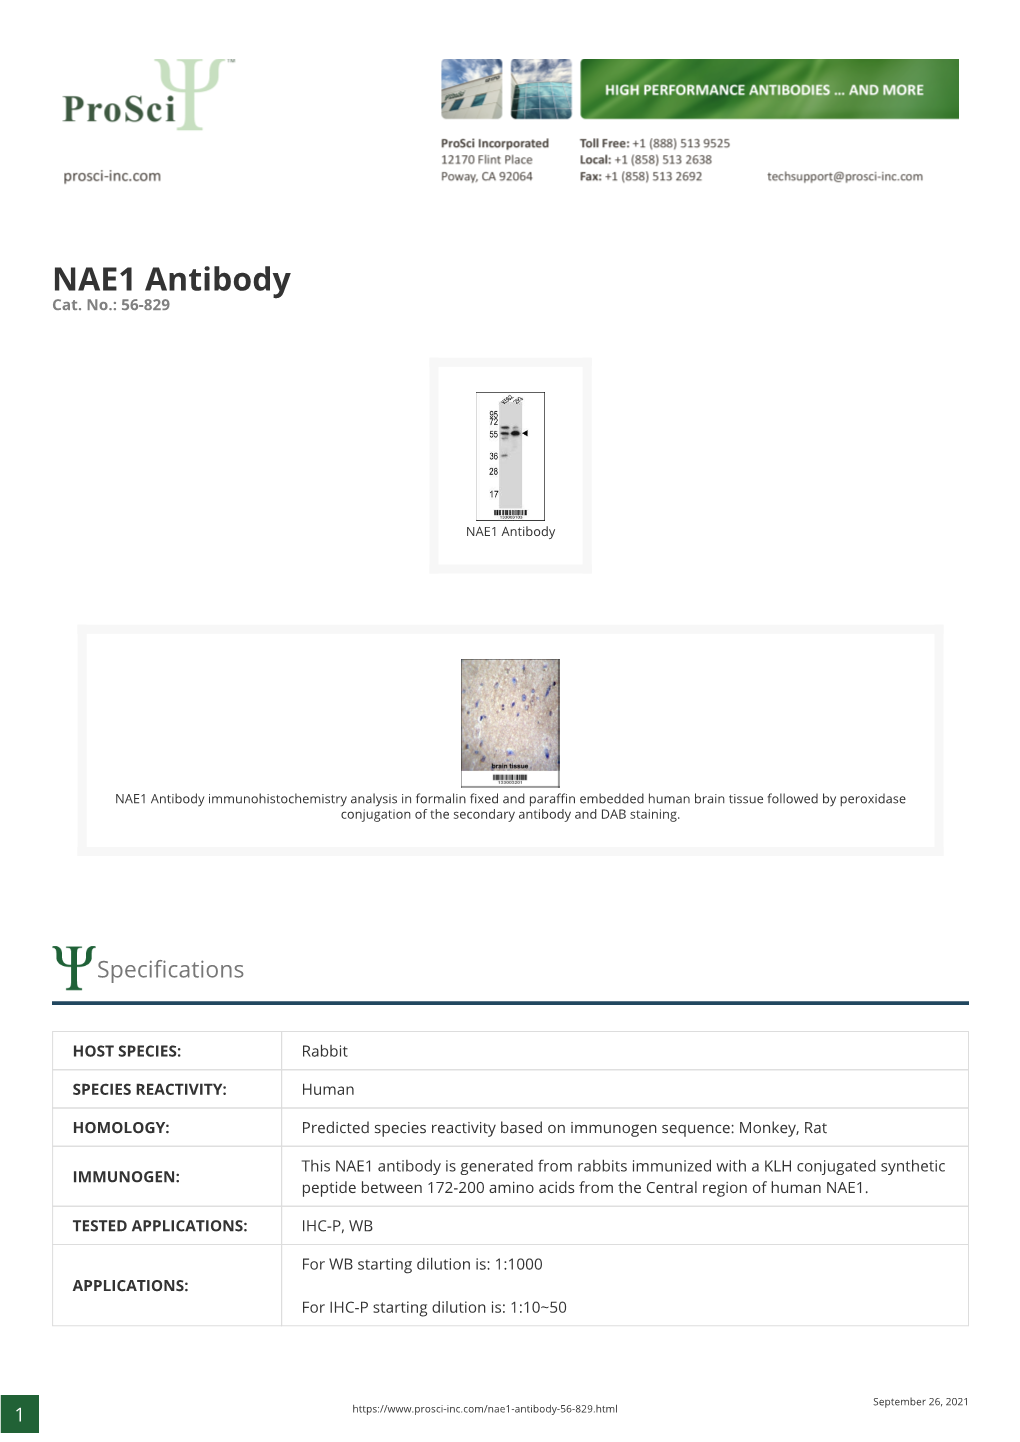 NAE1 Antibody Cat